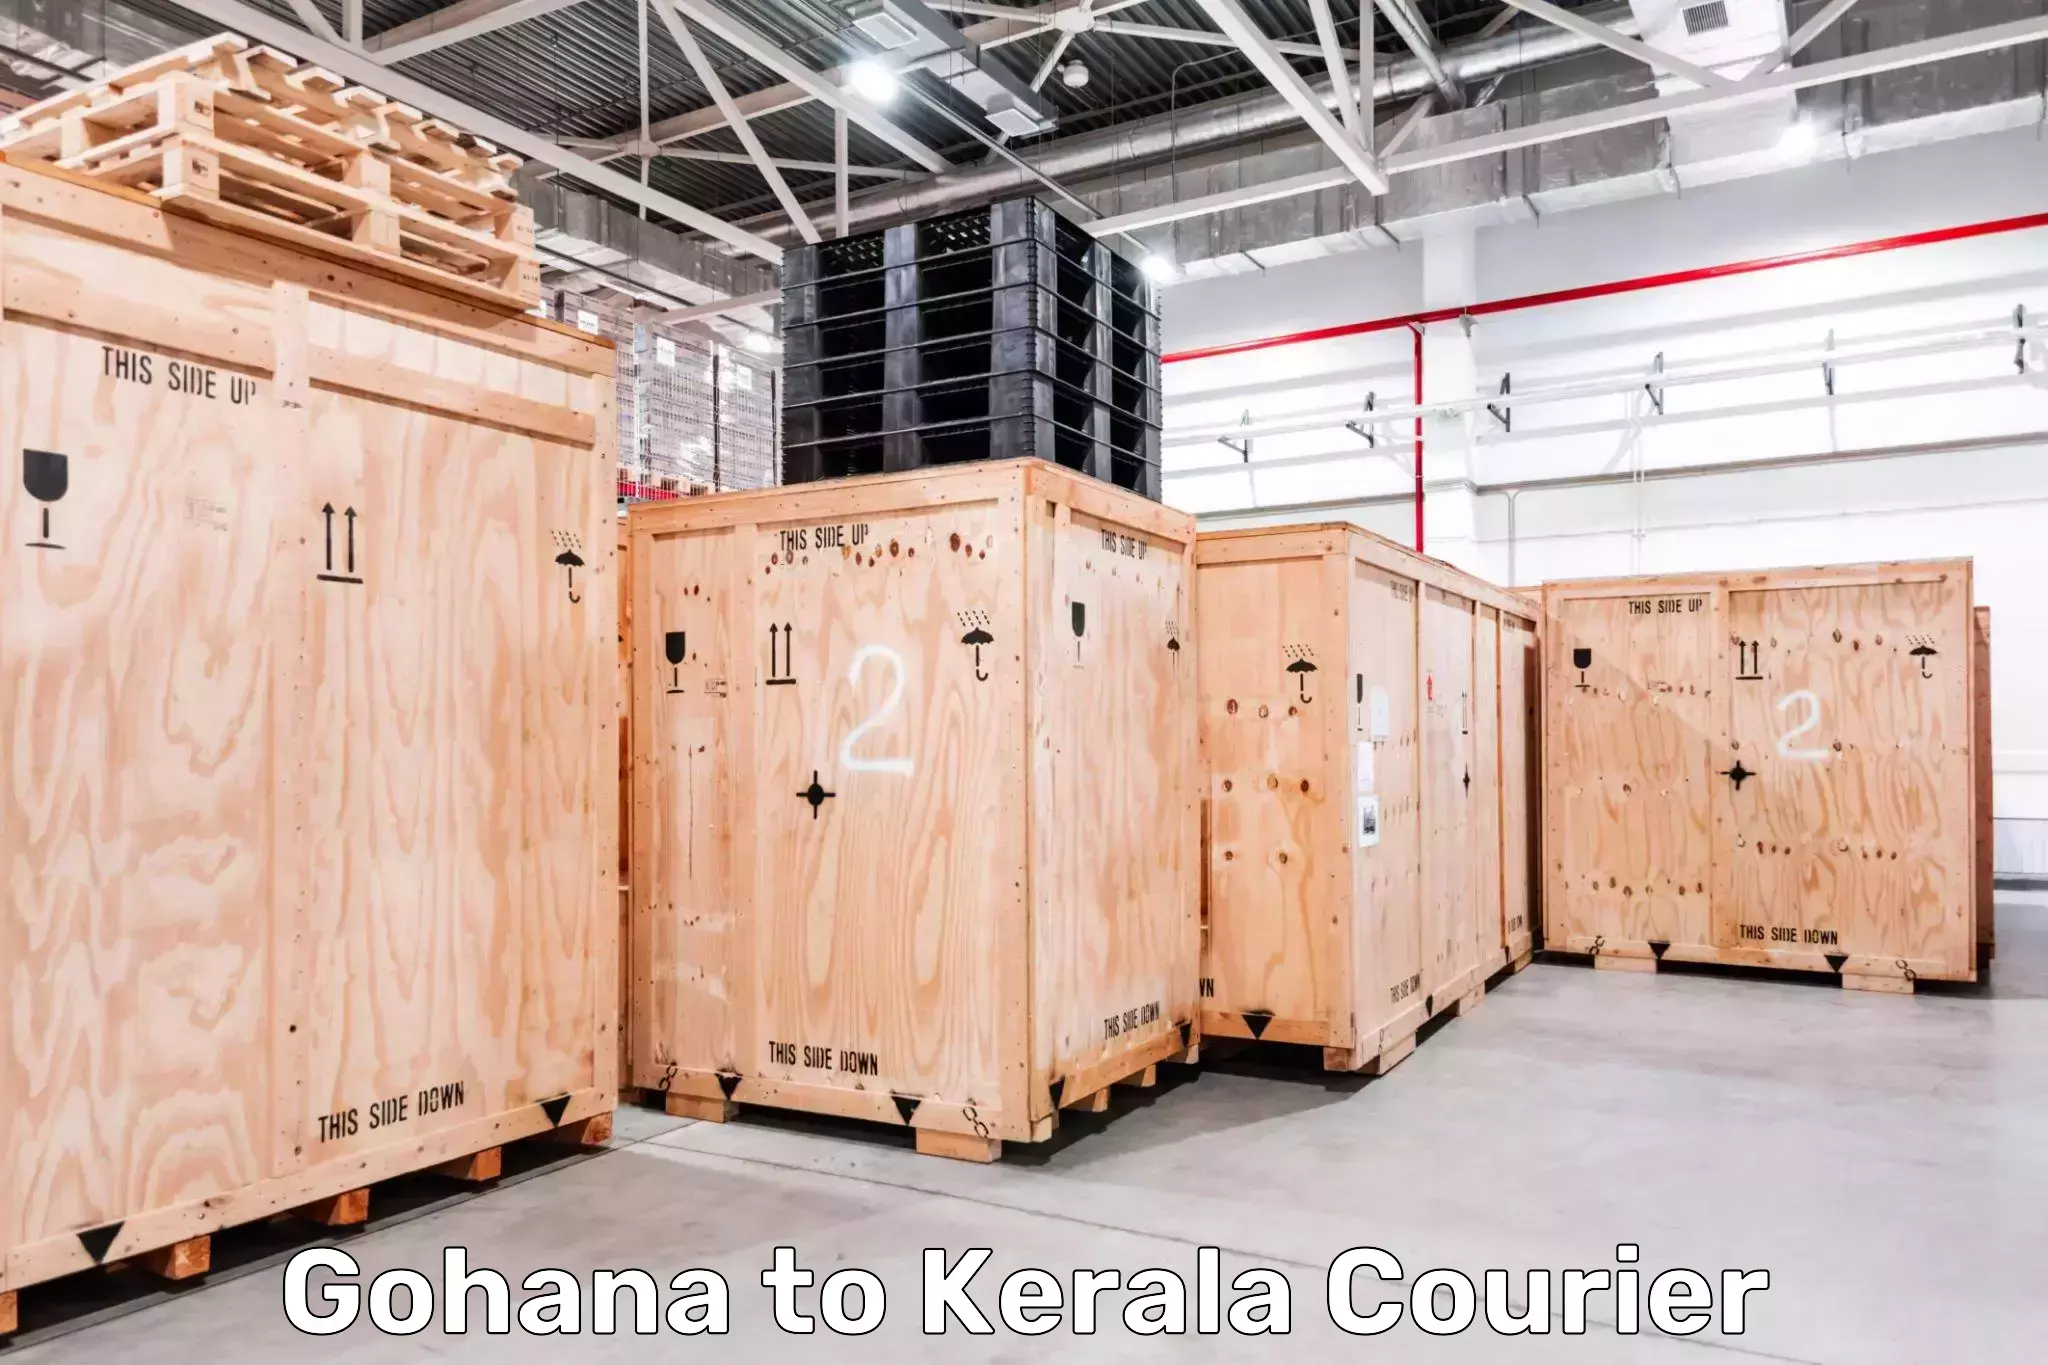 Global courier networks Gohana to Kerala